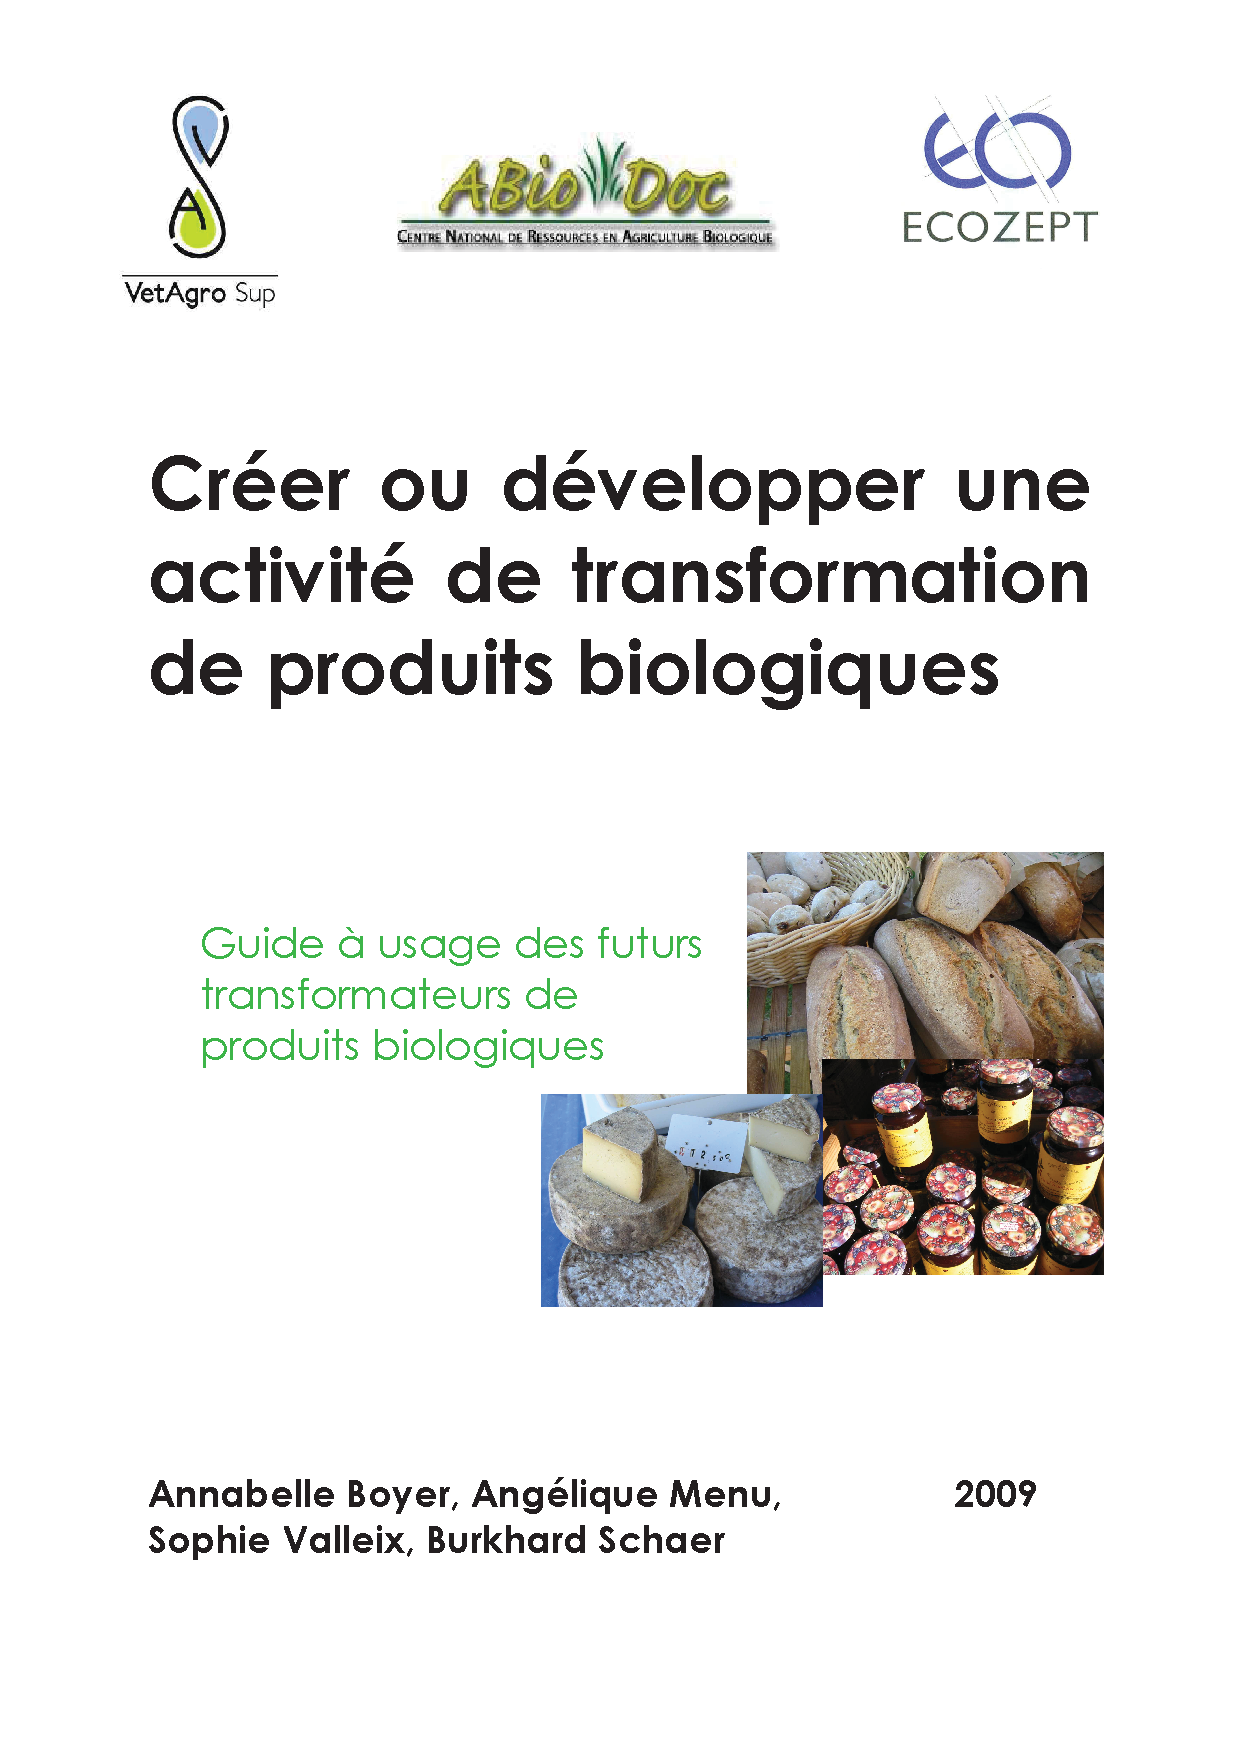 2009_creer_ou_developper_une_activite_de_transformation_de_produits_bio.png